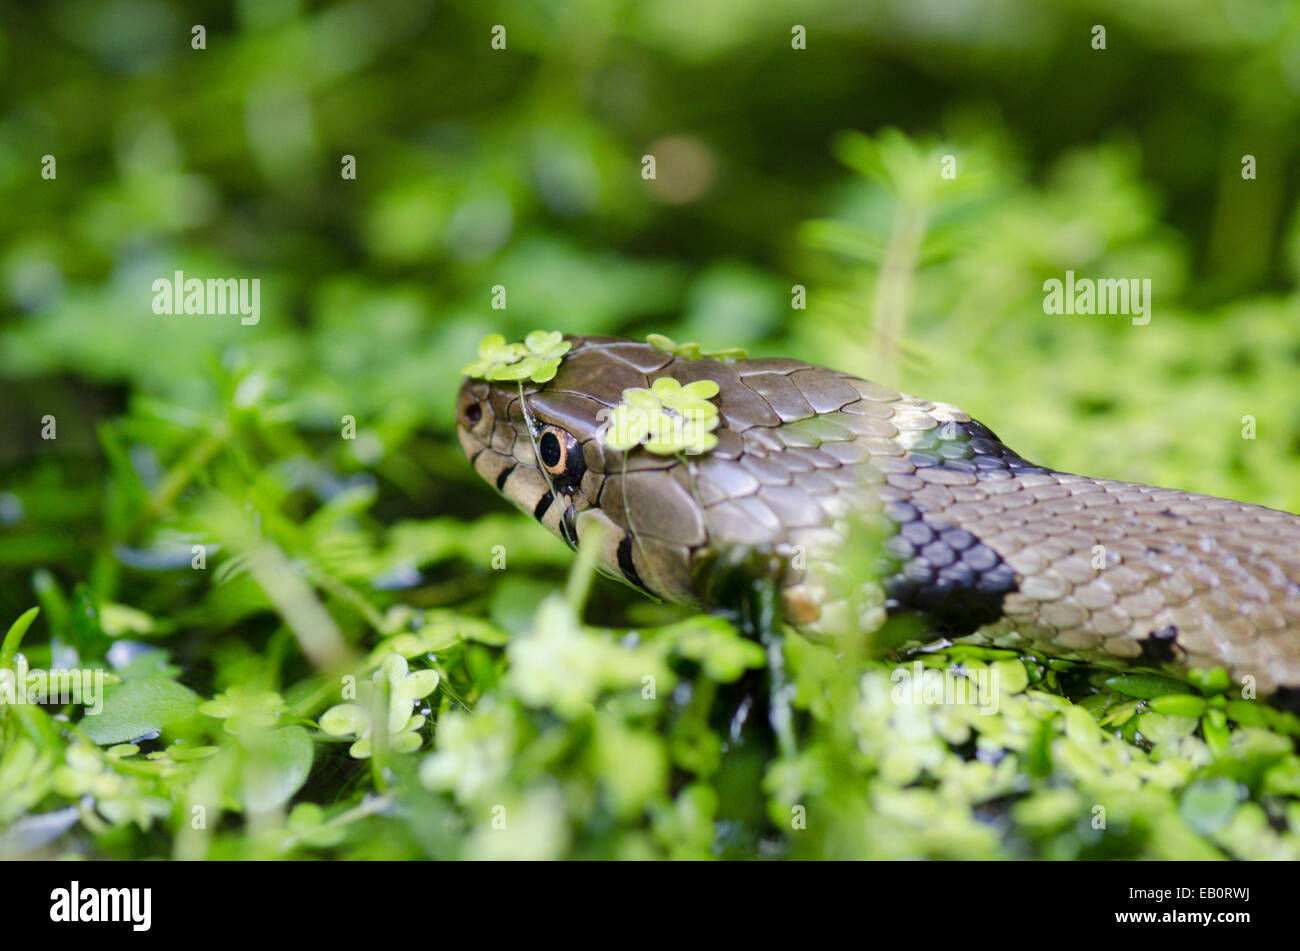 Grass snake [Natrix natrix] in pond water Stock Photo